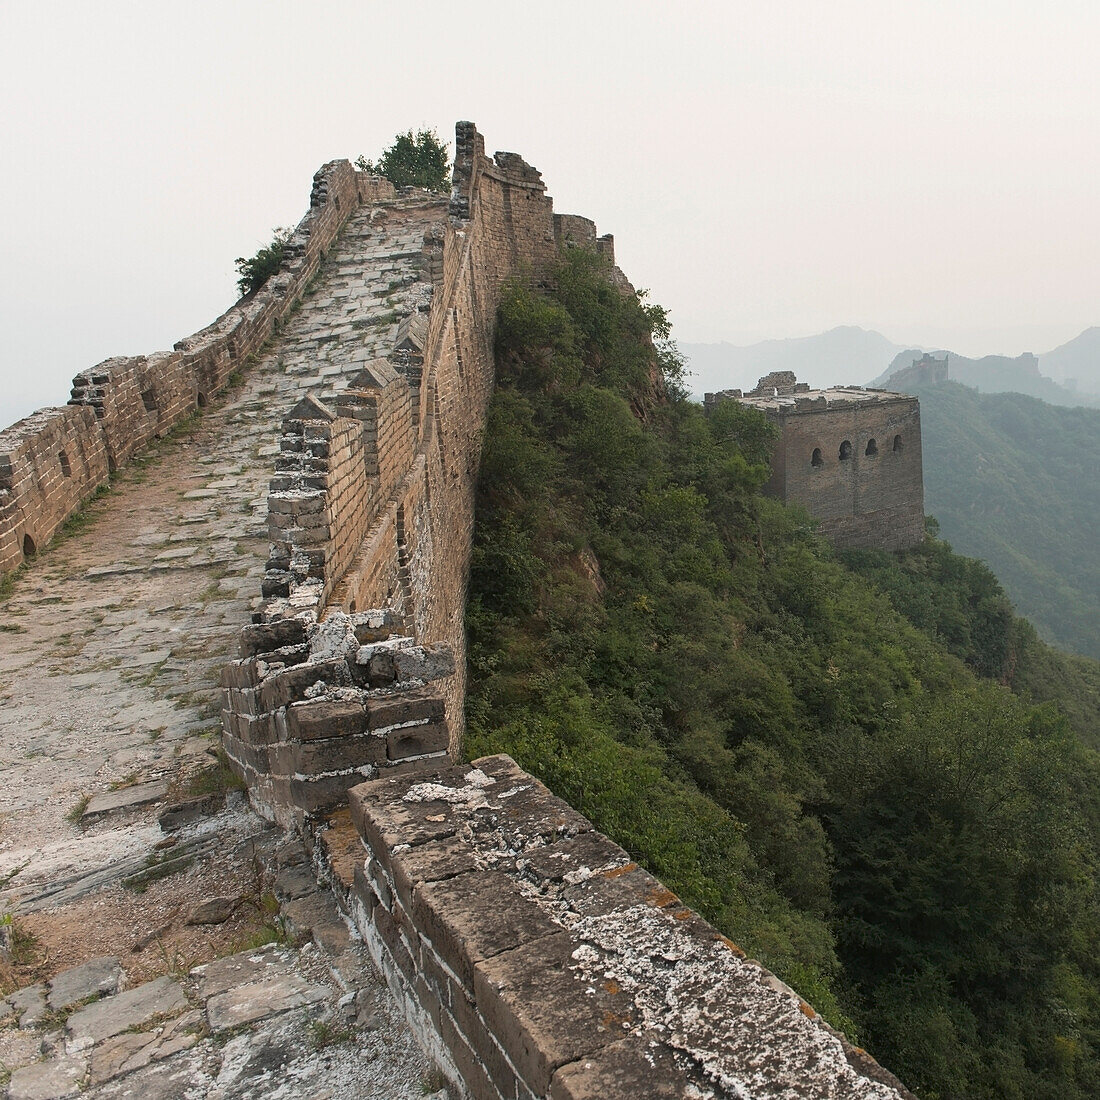 'The Great Wall of China;China'